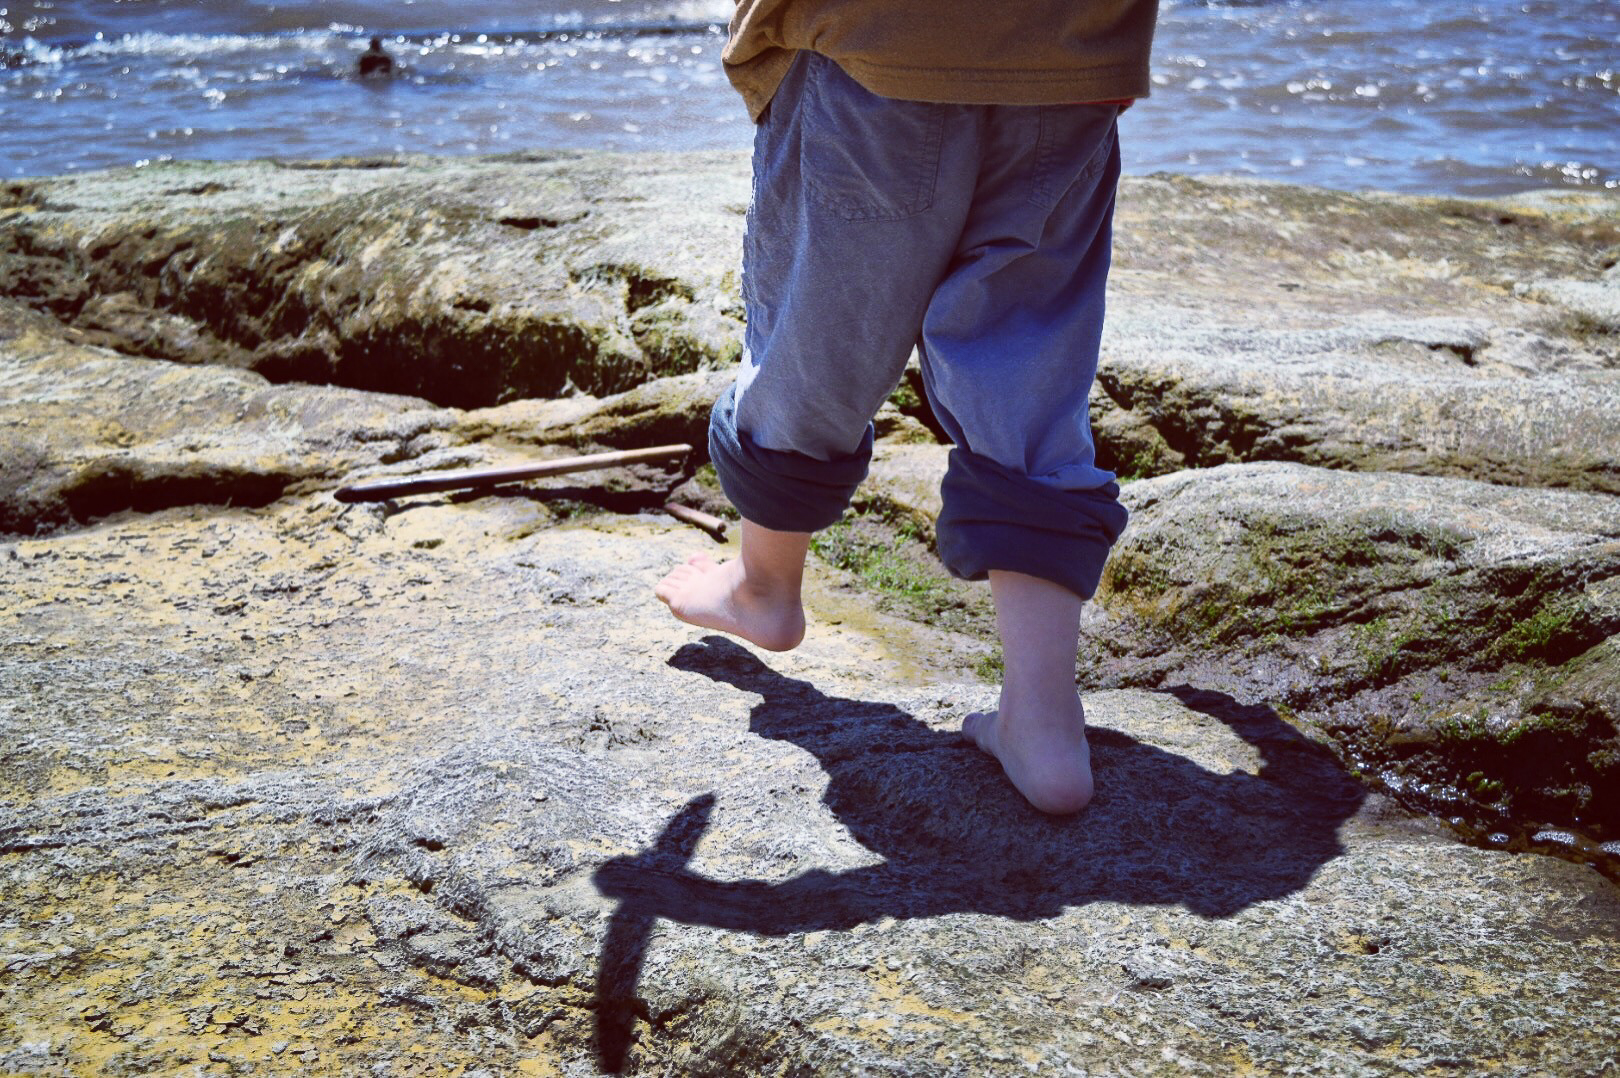 feet on a rocky beach